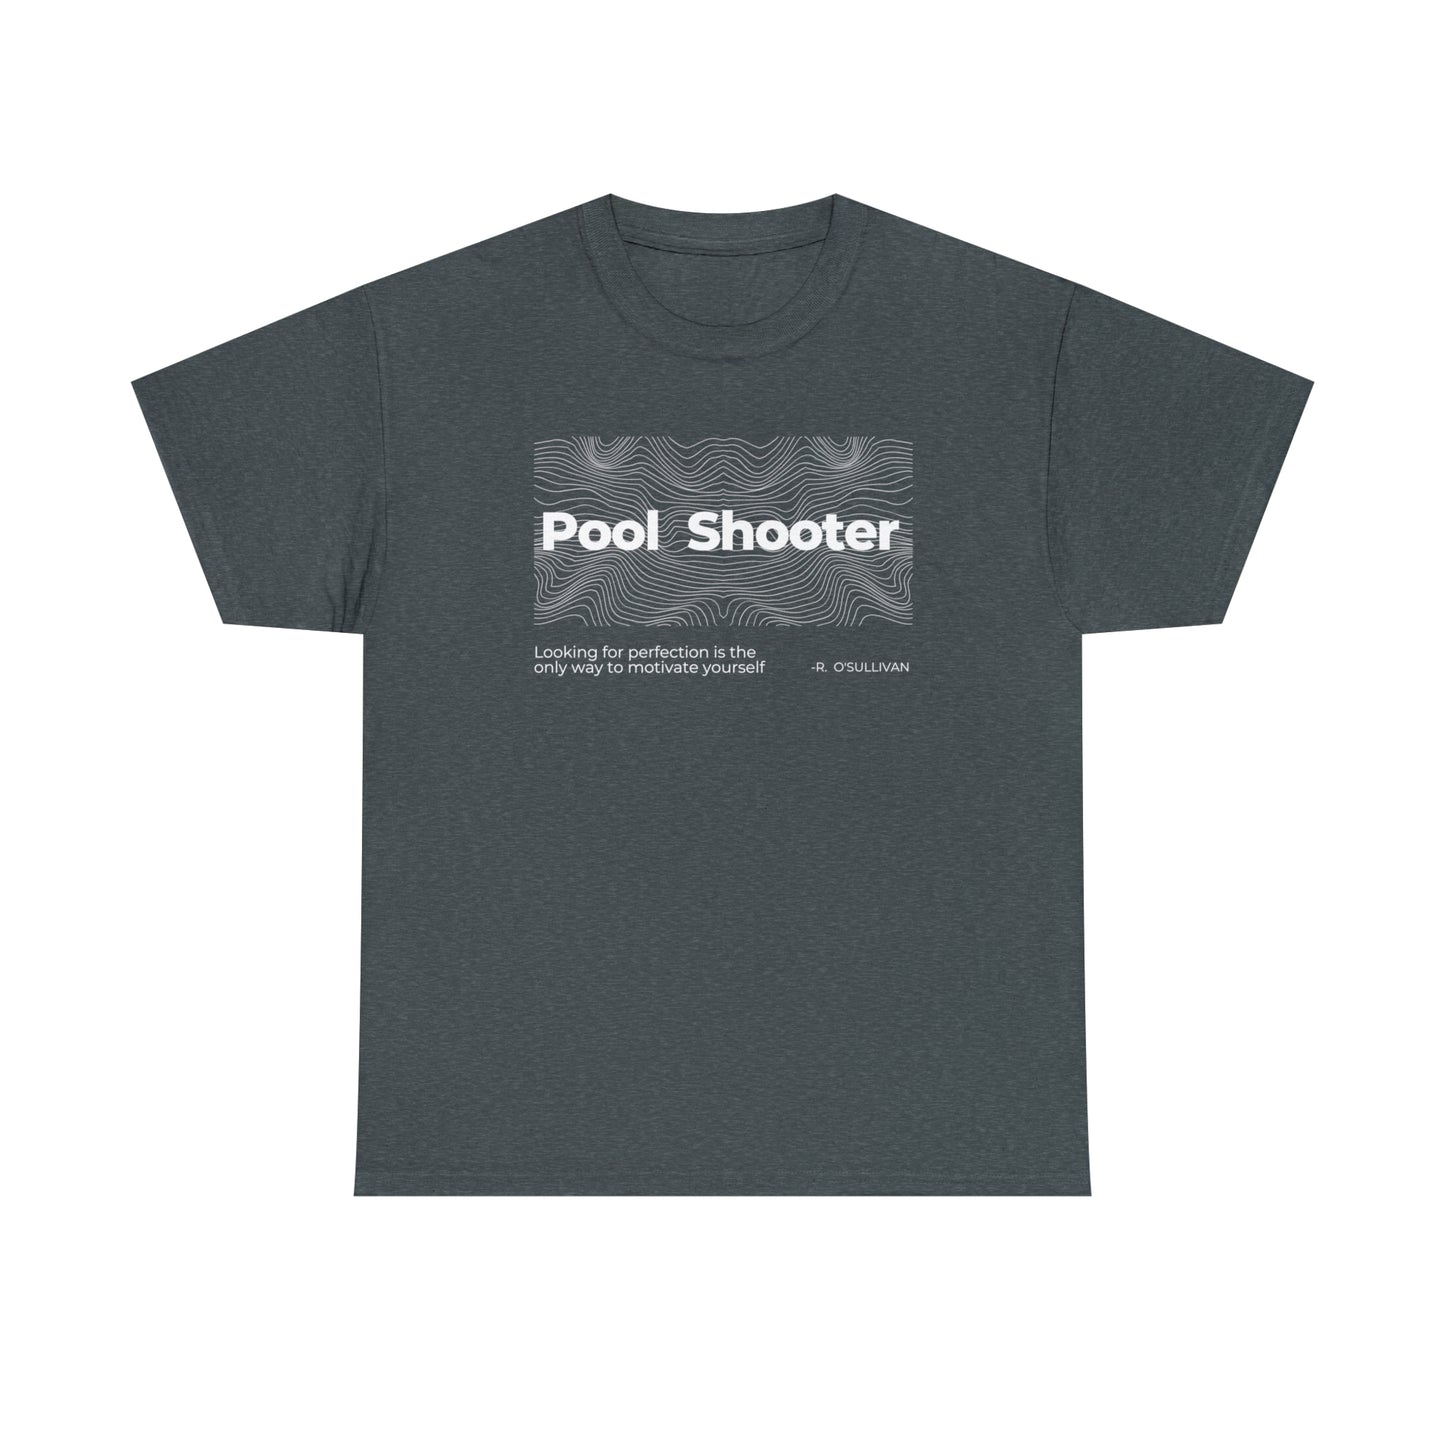 Pool shooter